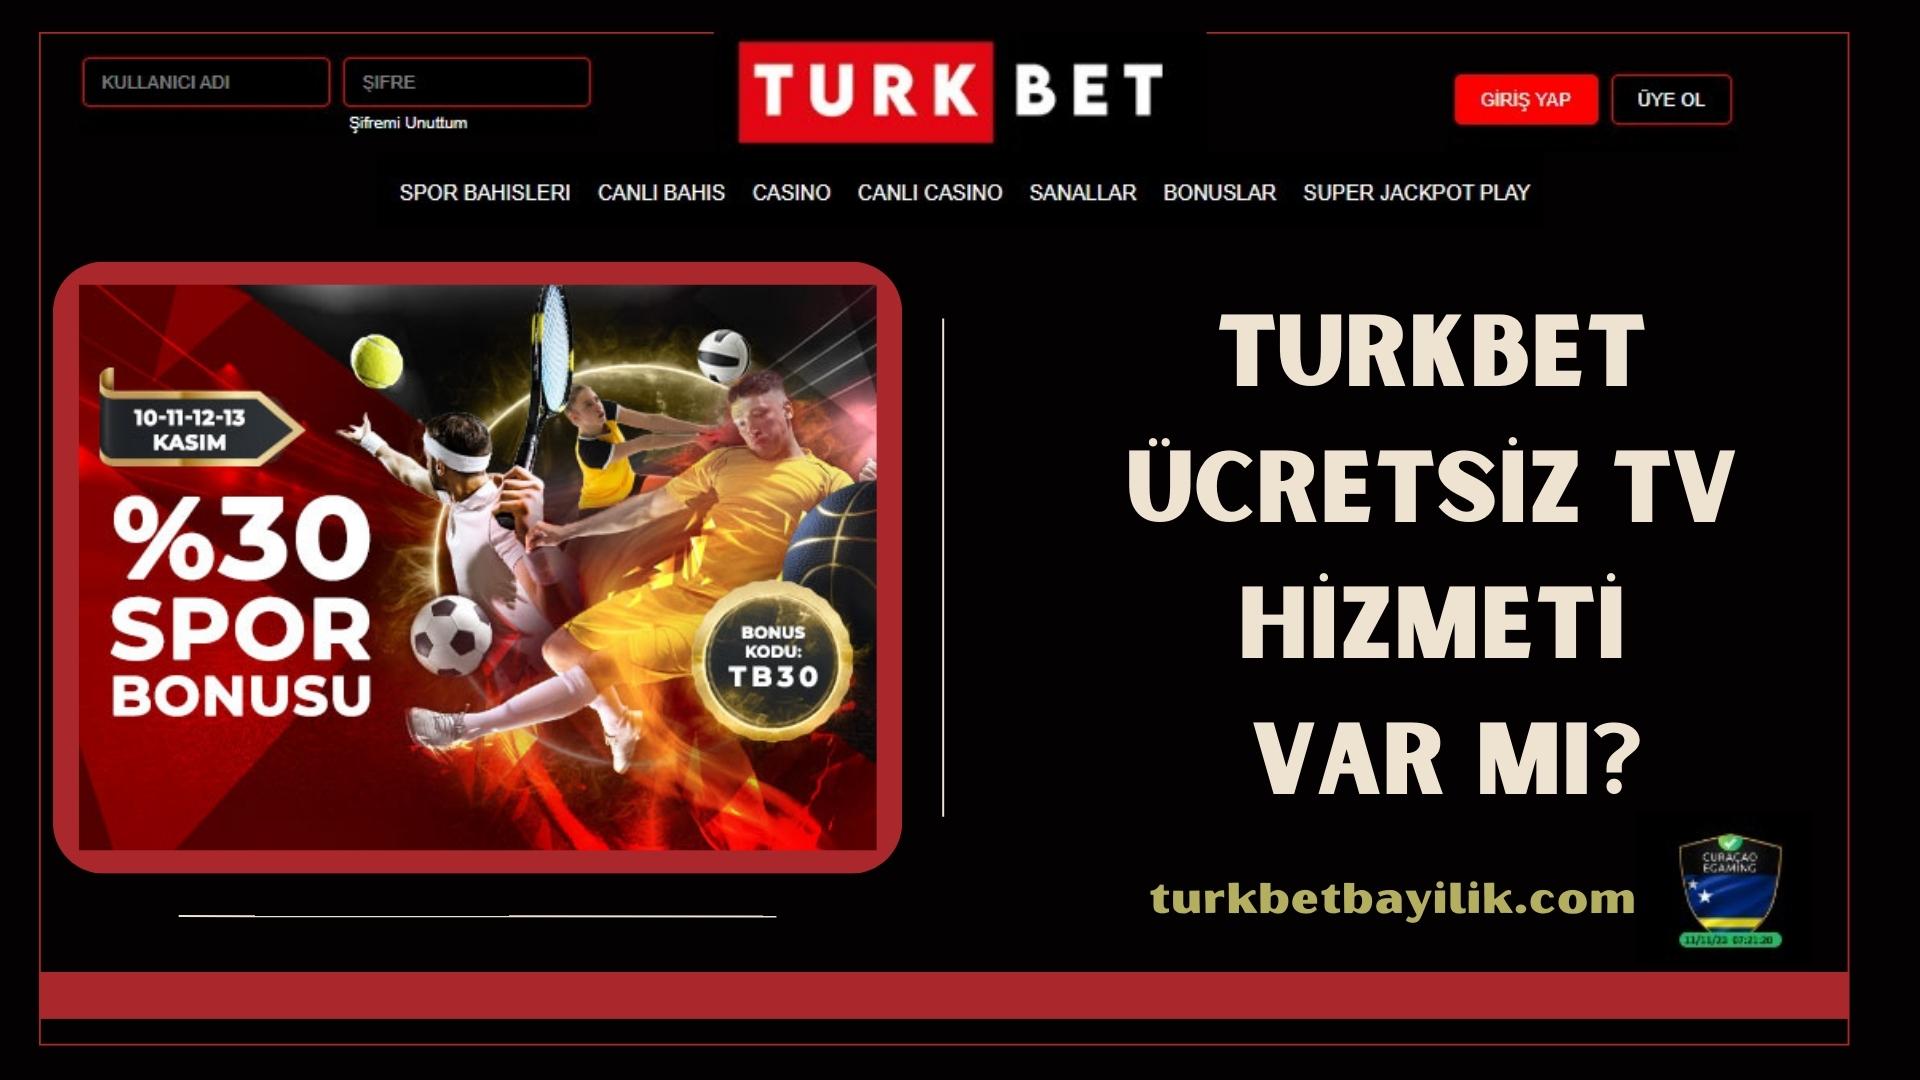 Turkbet Ücretsiz TV Hizmeti Var Mı?